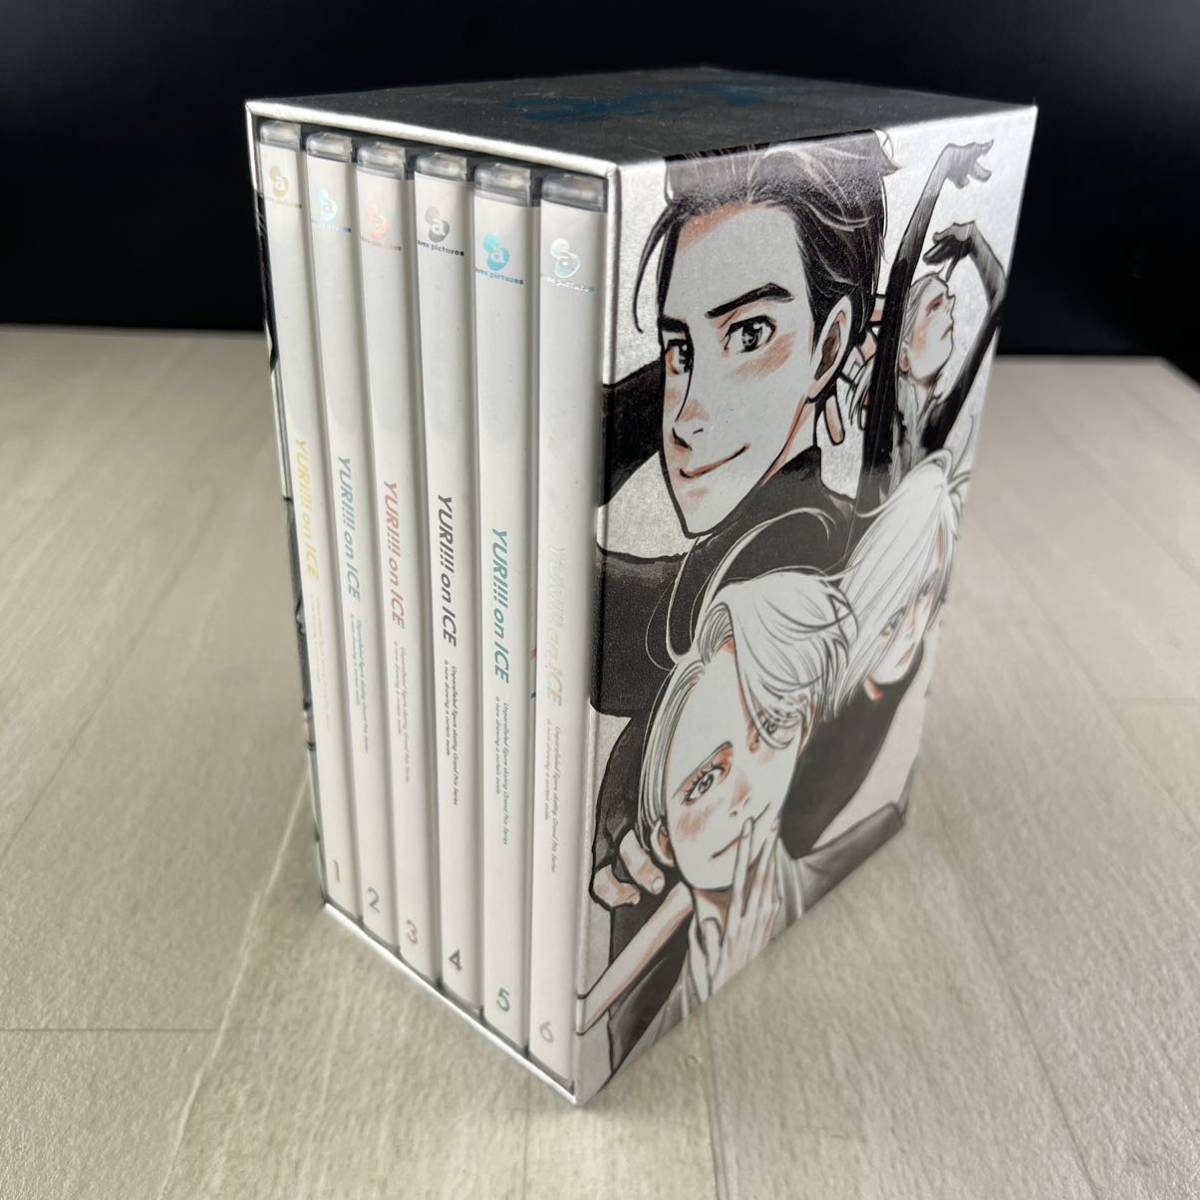 D15 ユーリ!!! on ICE Blu-ray 全6巻セット 収納BOX 付き ブルーレイ_画像1